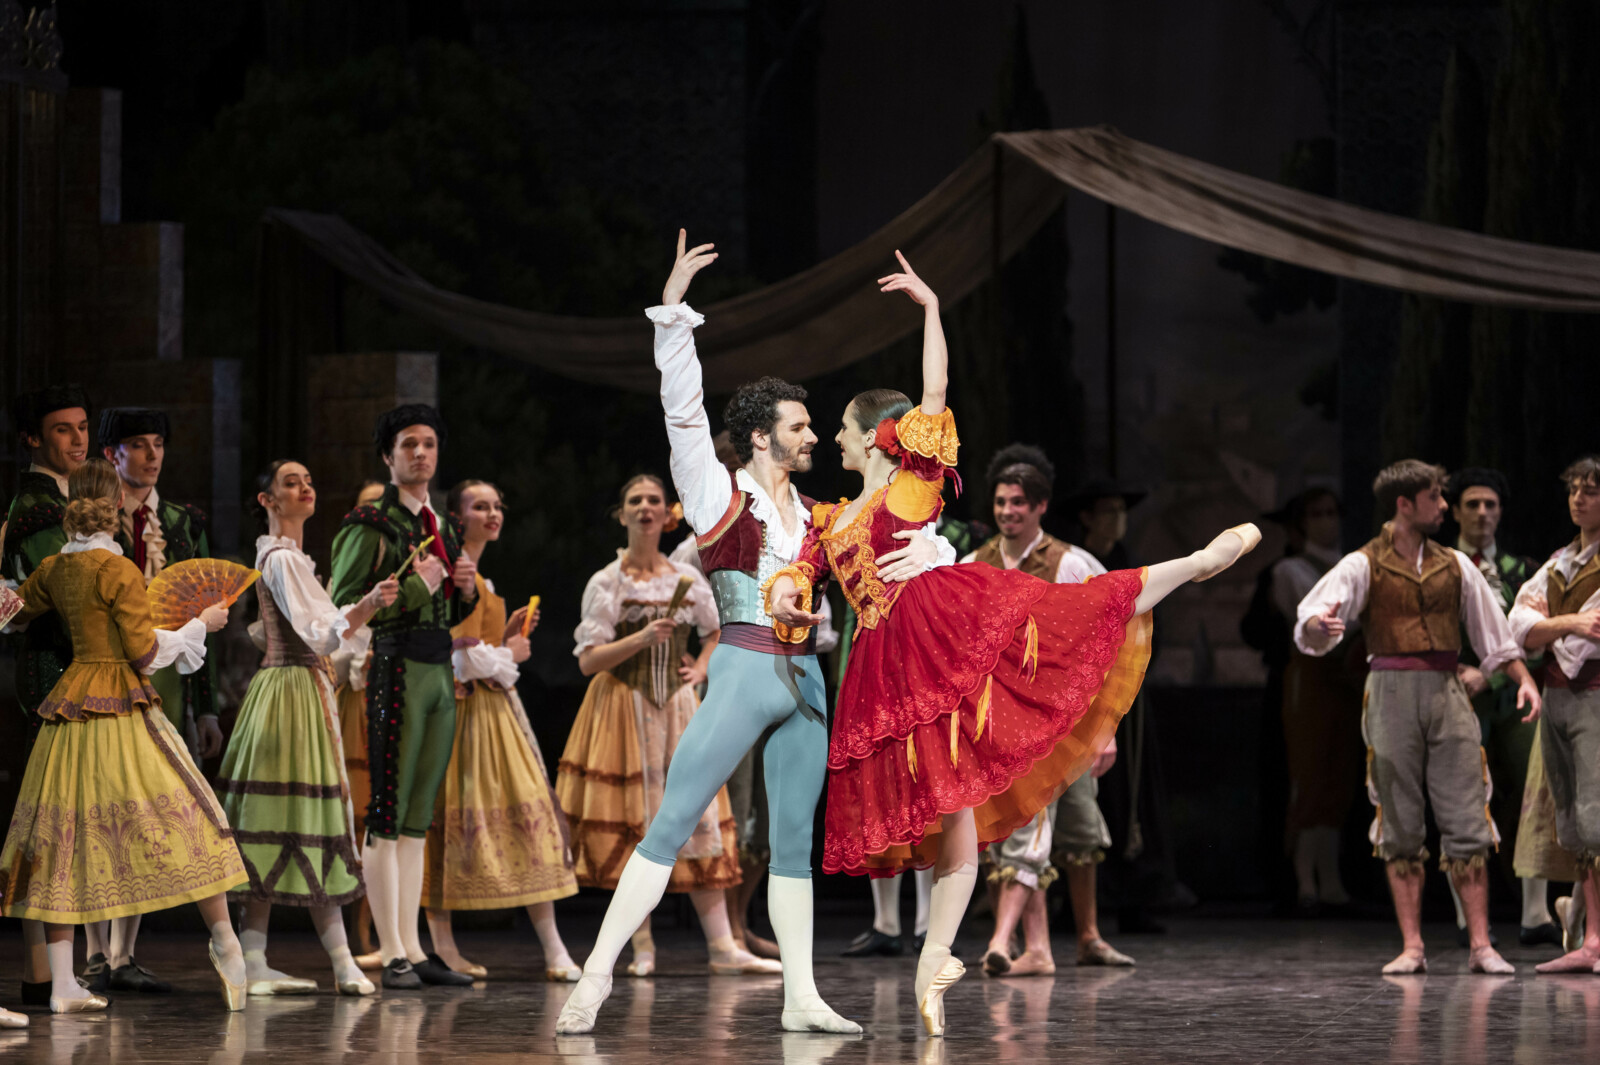 En balettensemble i spanska kostymer dansar på en scen